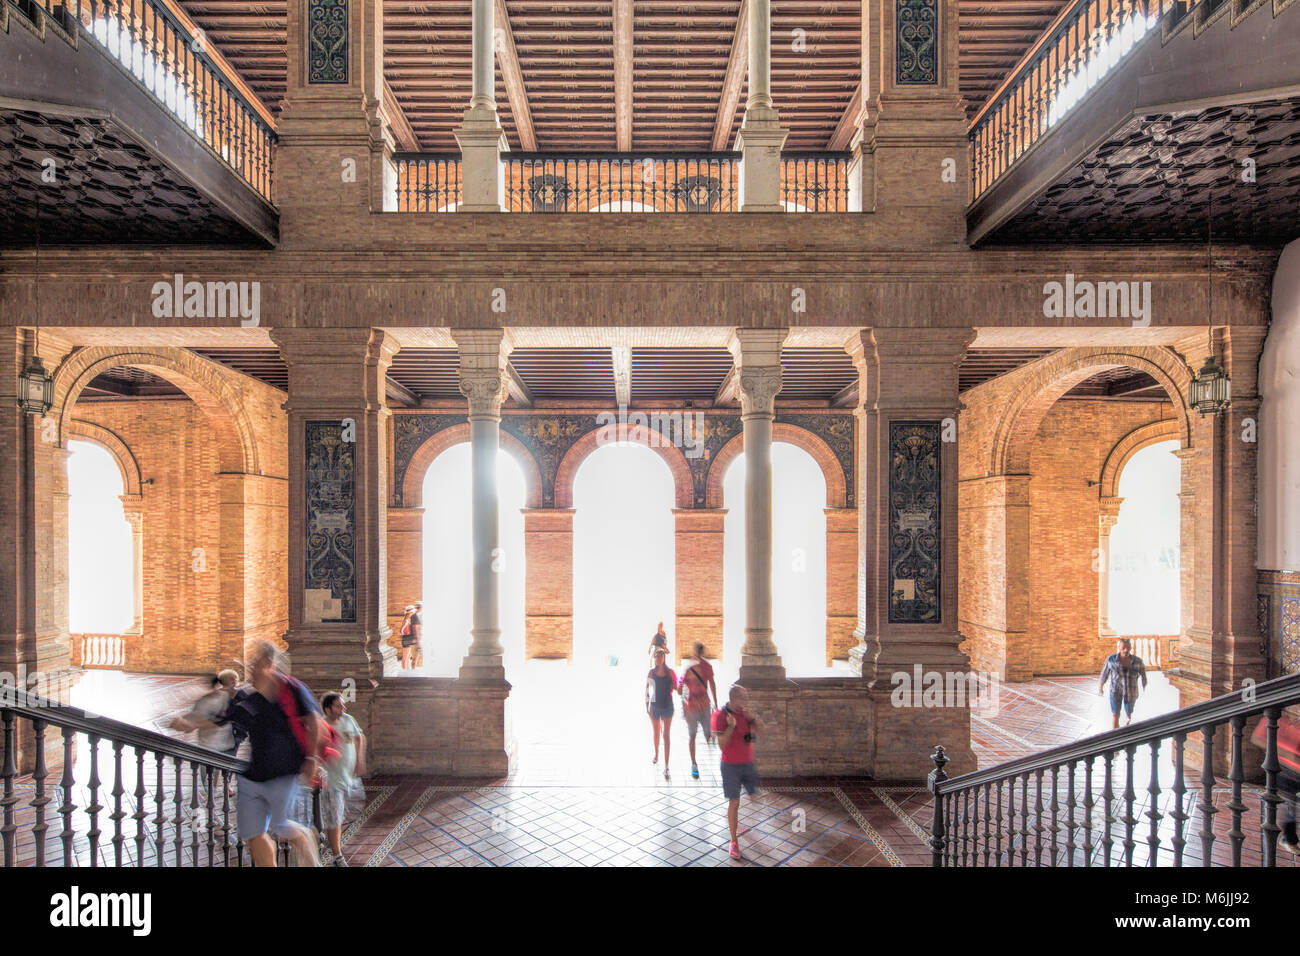 Les visiteurs à l'intérieur de la Plaza de España, Séville, Espagne Banque D'Images